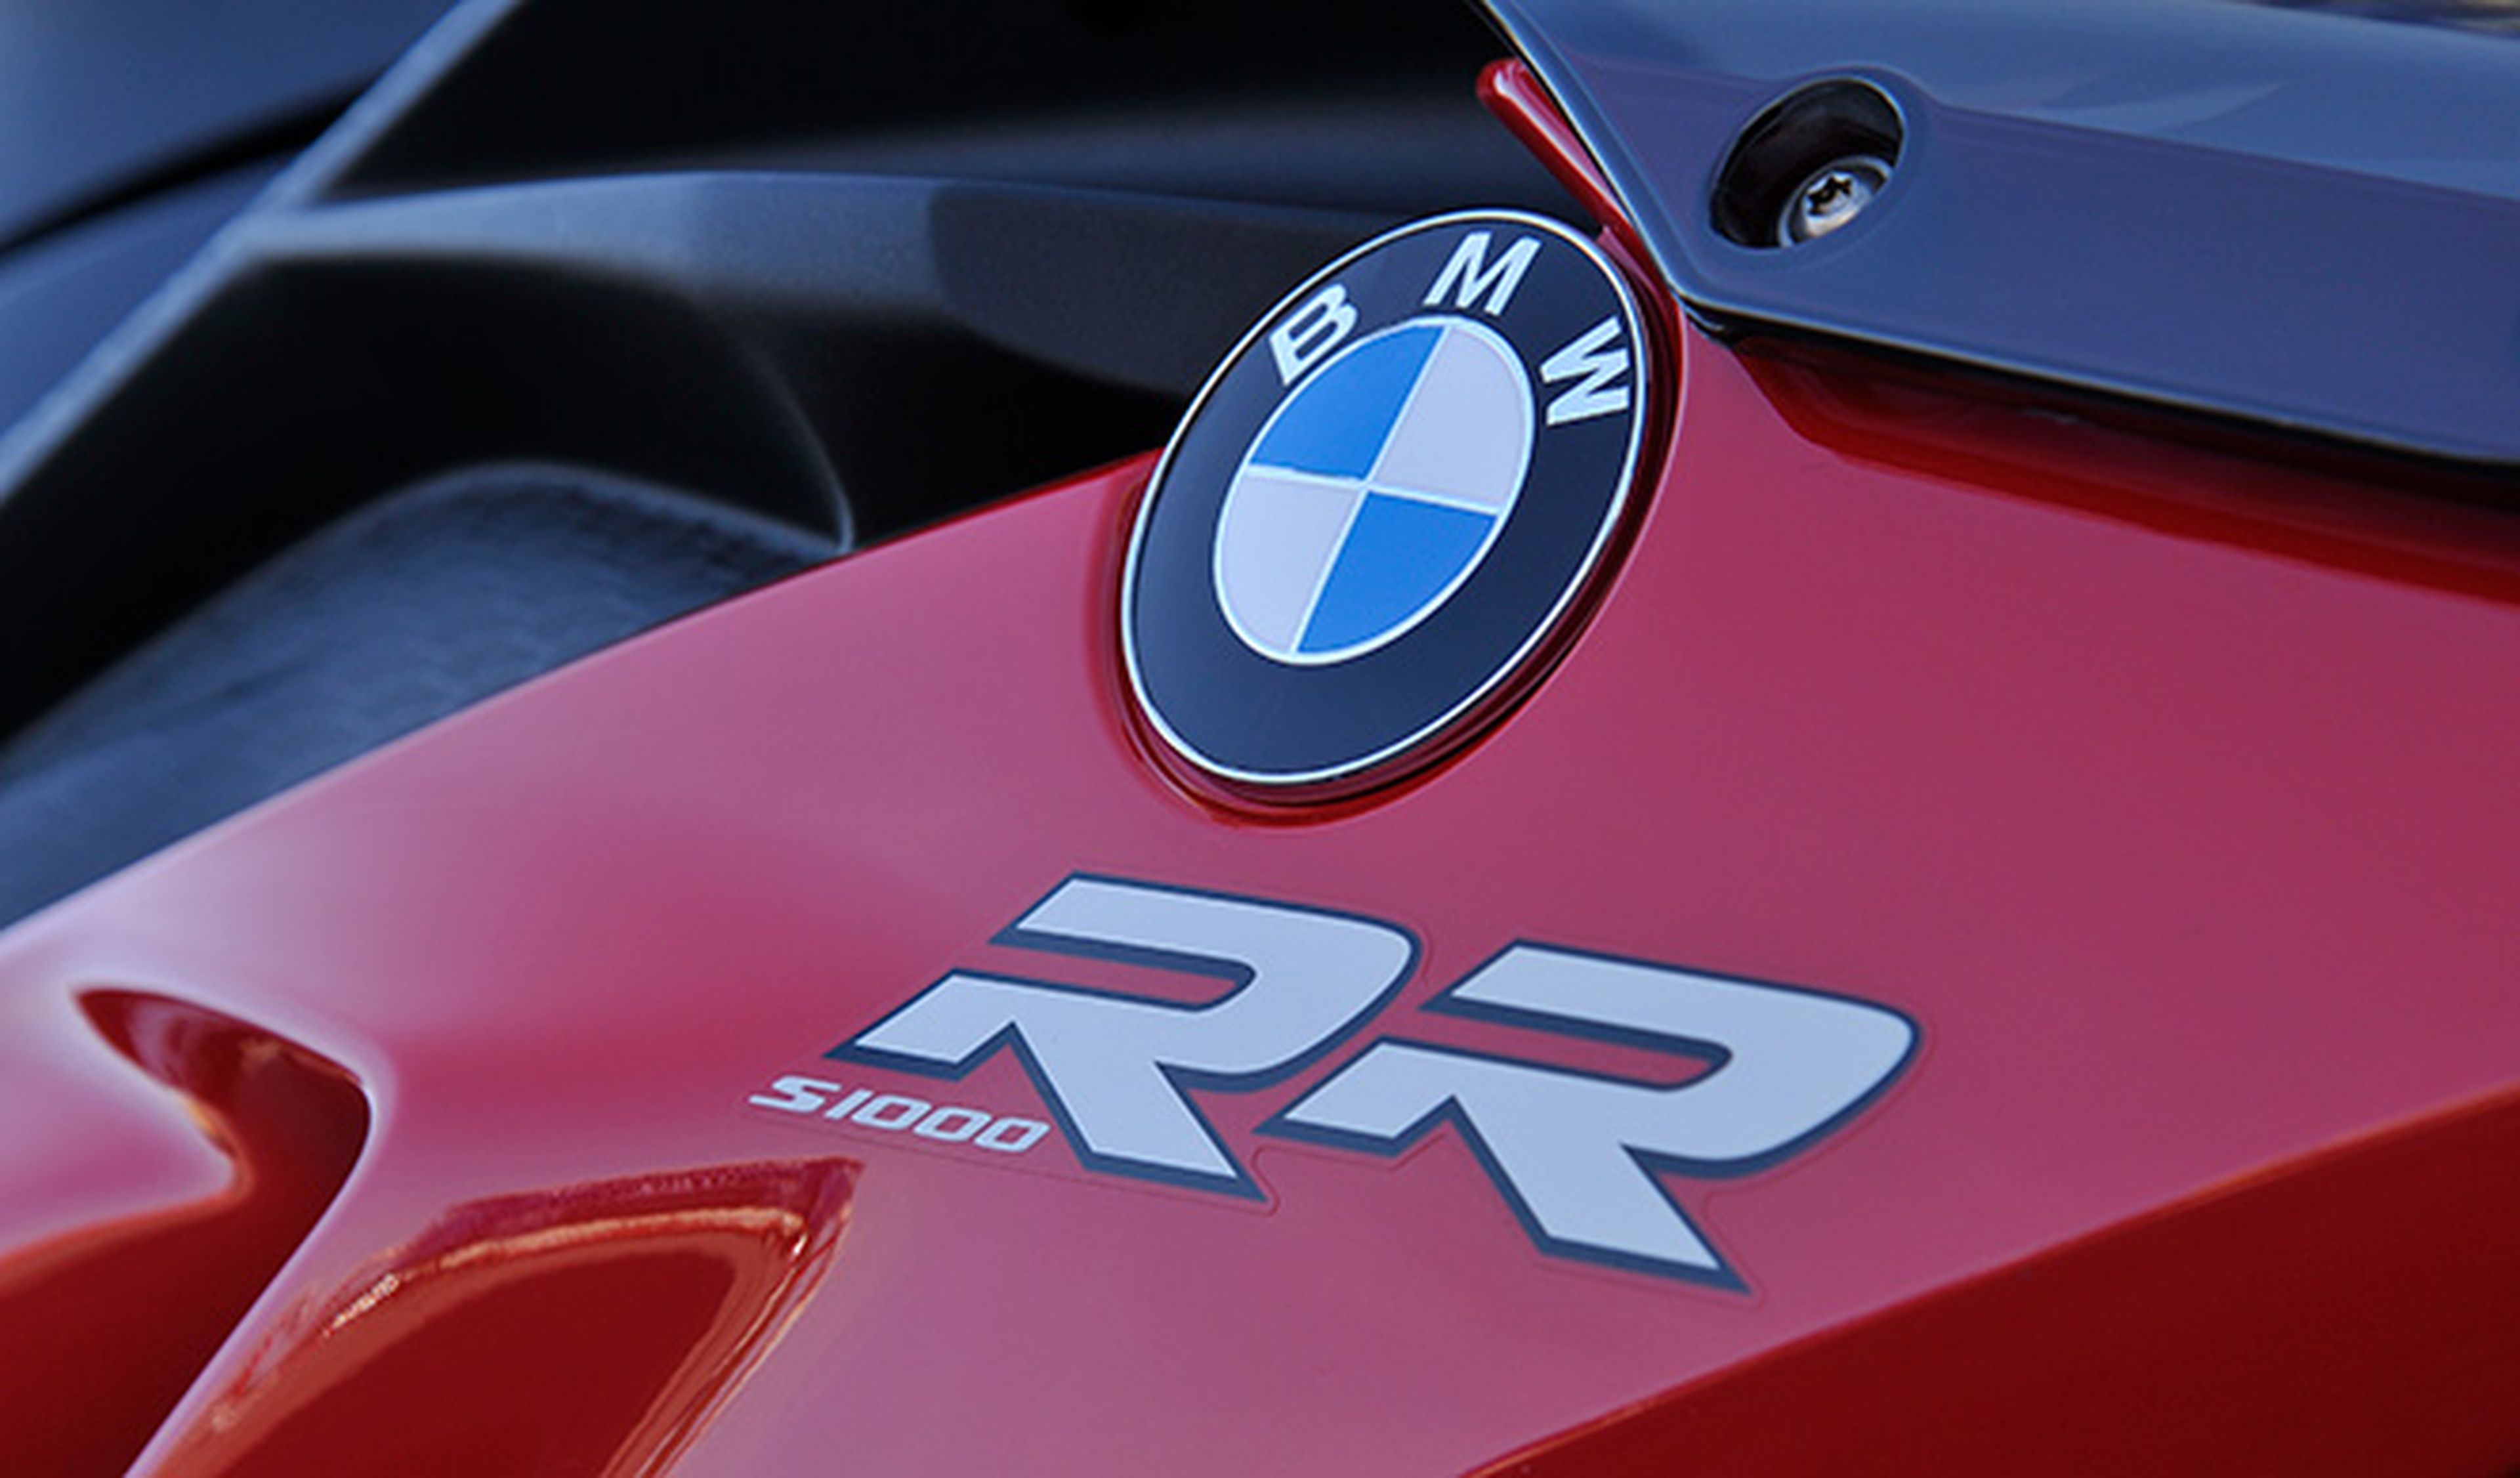 La nueva BMW S 1000 RR 2015 se presentará en INTERMOT